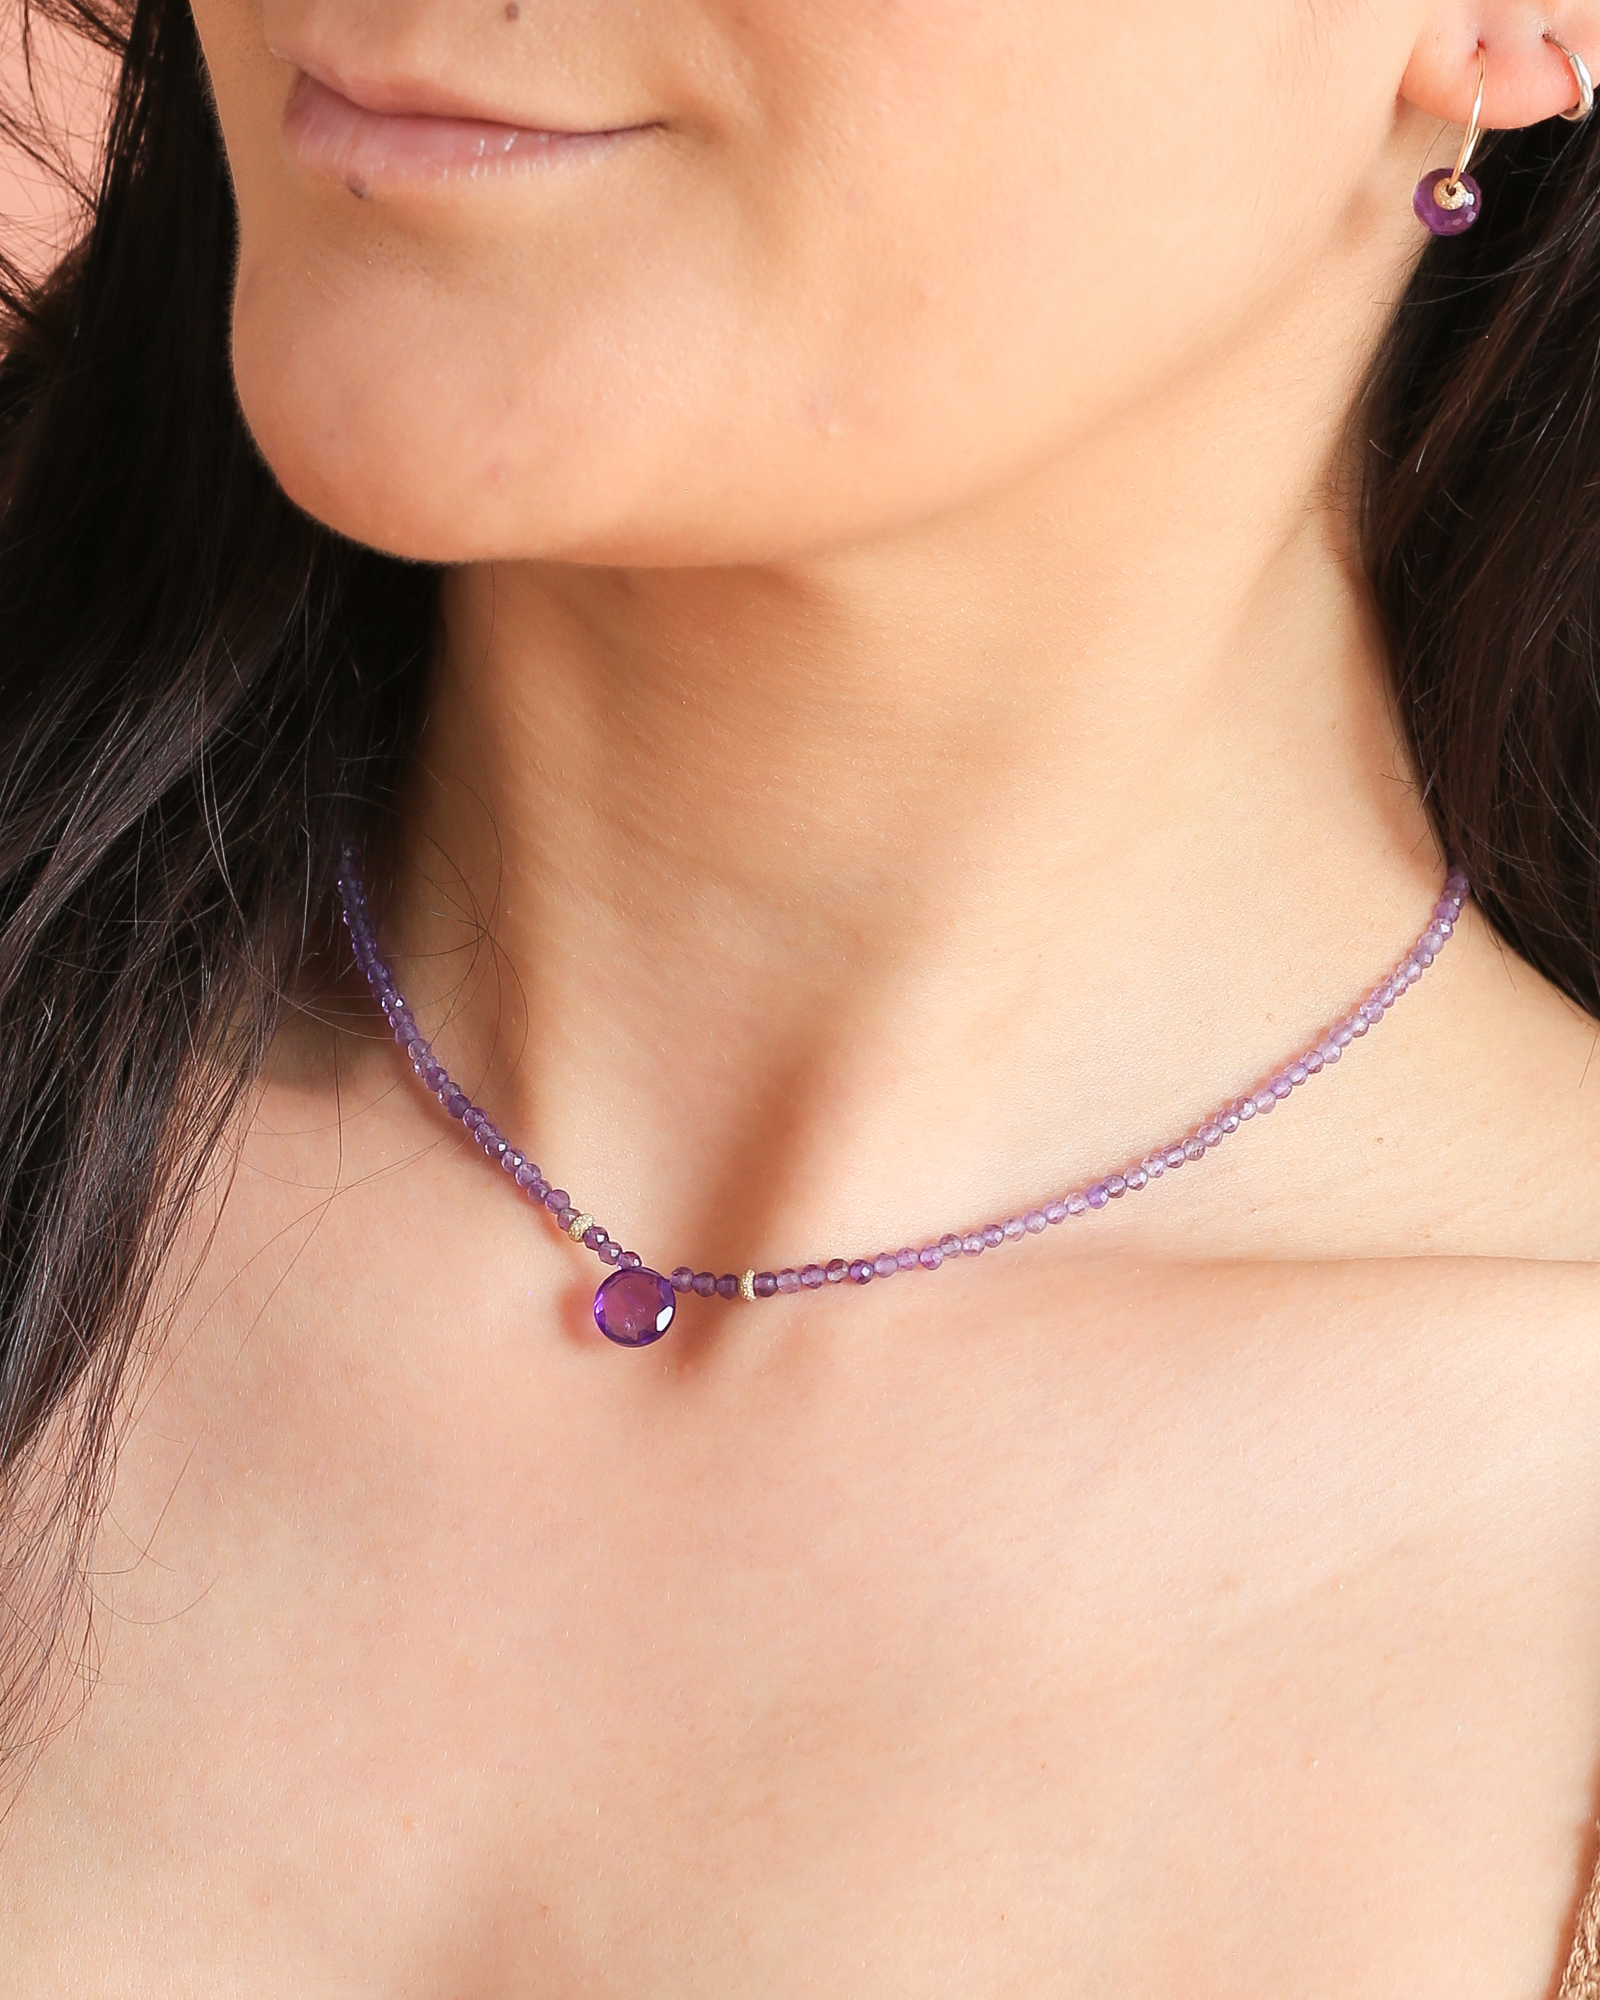 Het model draagt Amazing Amethist, een edelsteen ketting van paarse en lila amethist met een mooie vaste hanger van paarse amethist